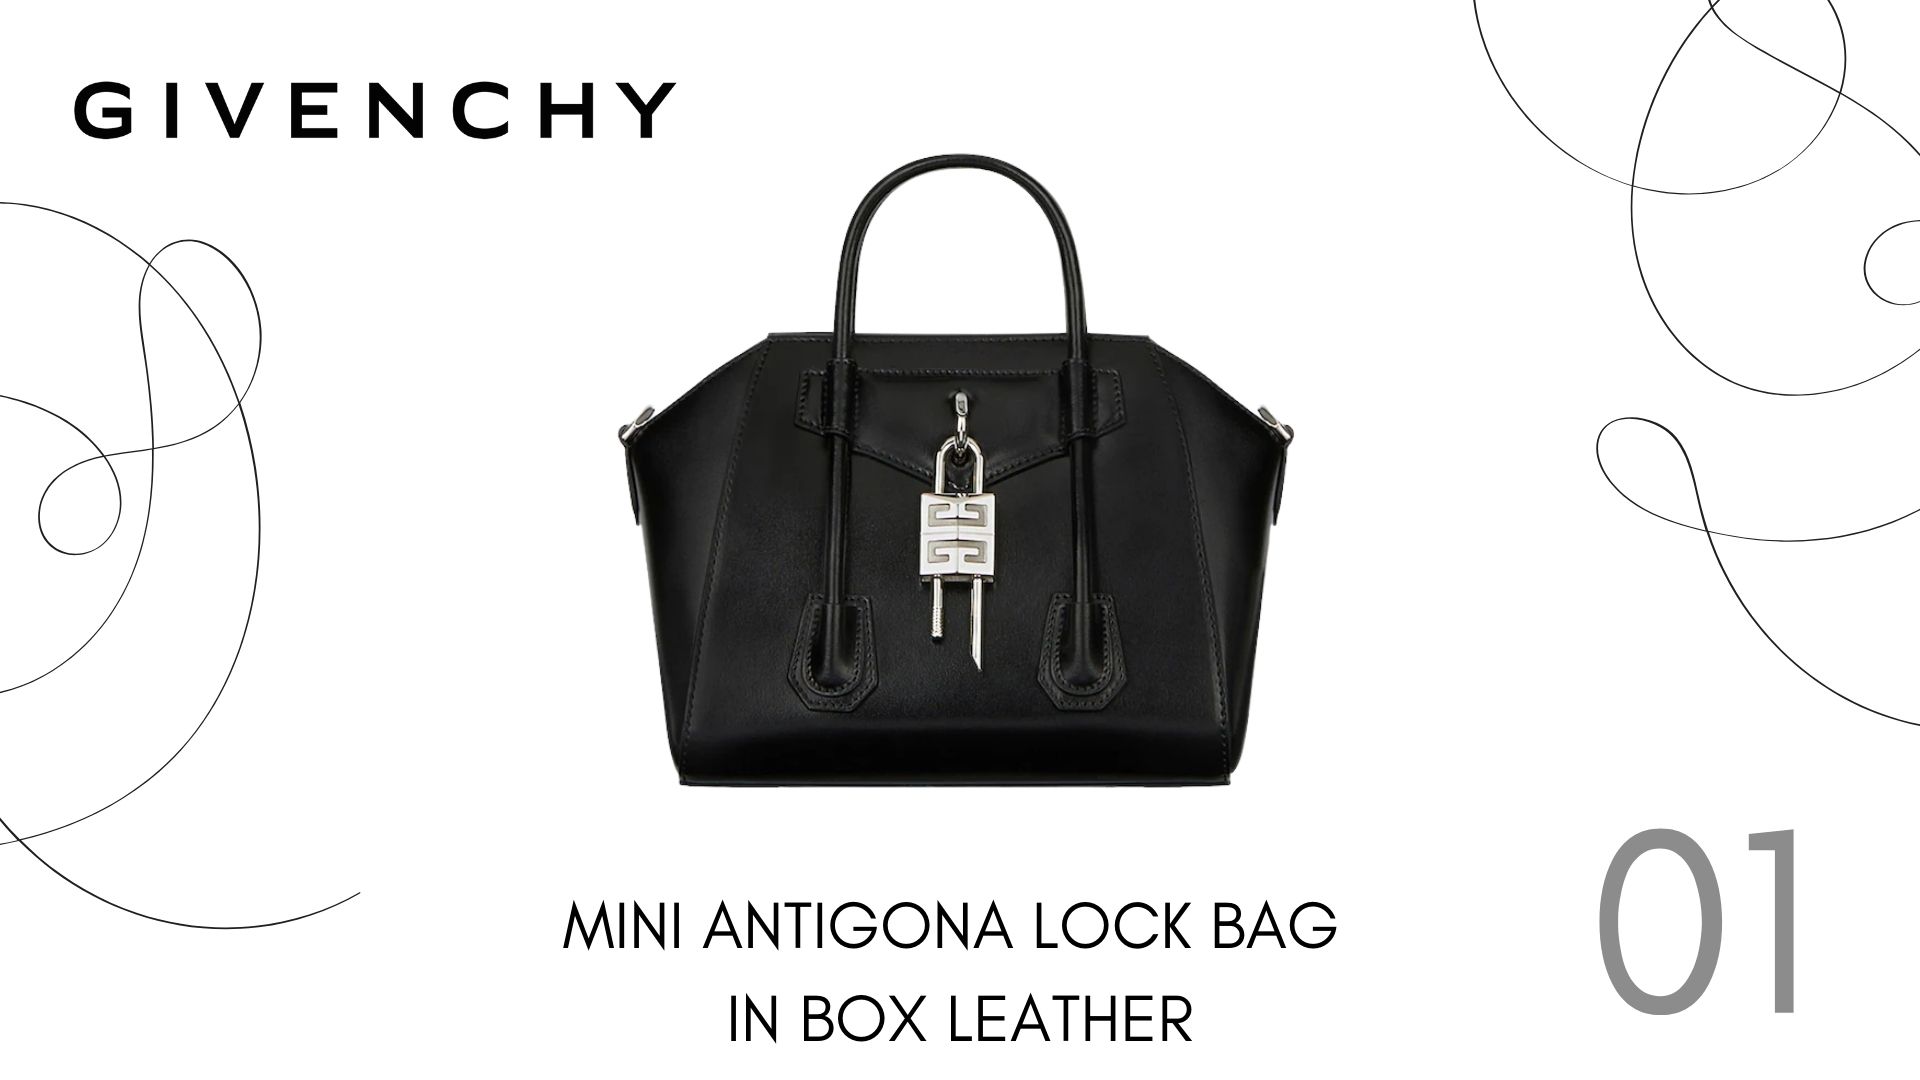 อัพเดท 9 กระเป๋า Givenchy รุ่นใหม่ที่น่าจับตามอง